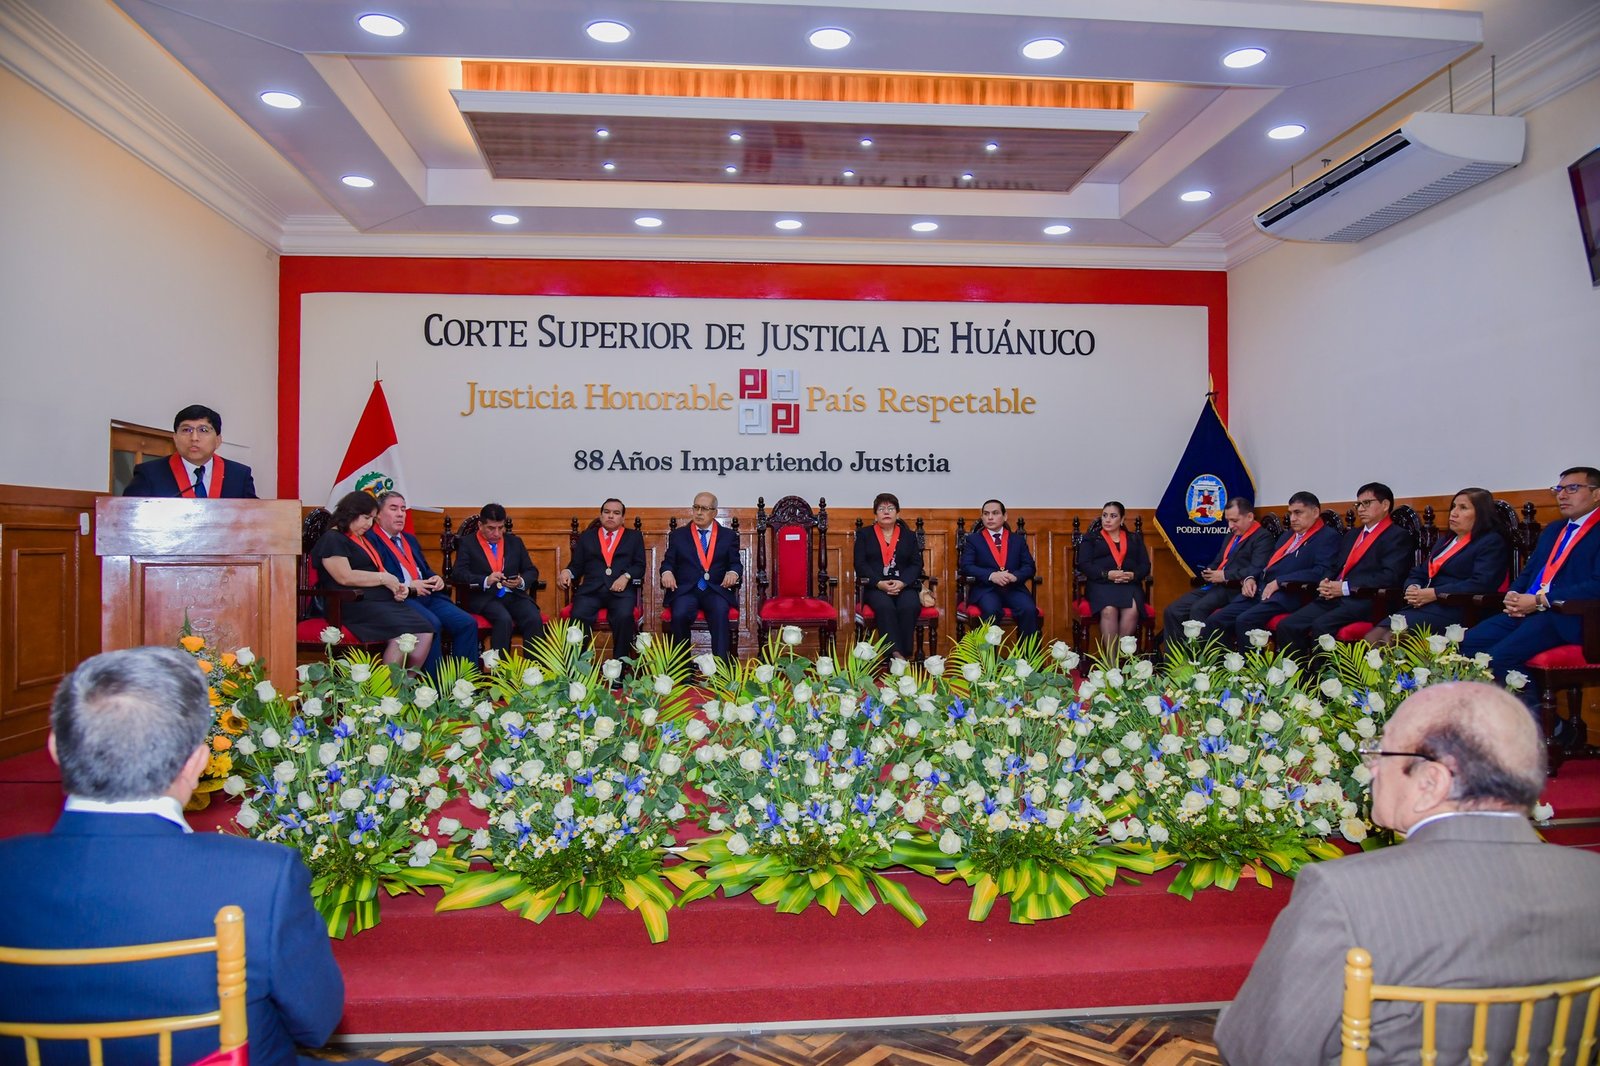 La Corte Superior de Justicia de Huánuco conmemora sus 88 años de instalación